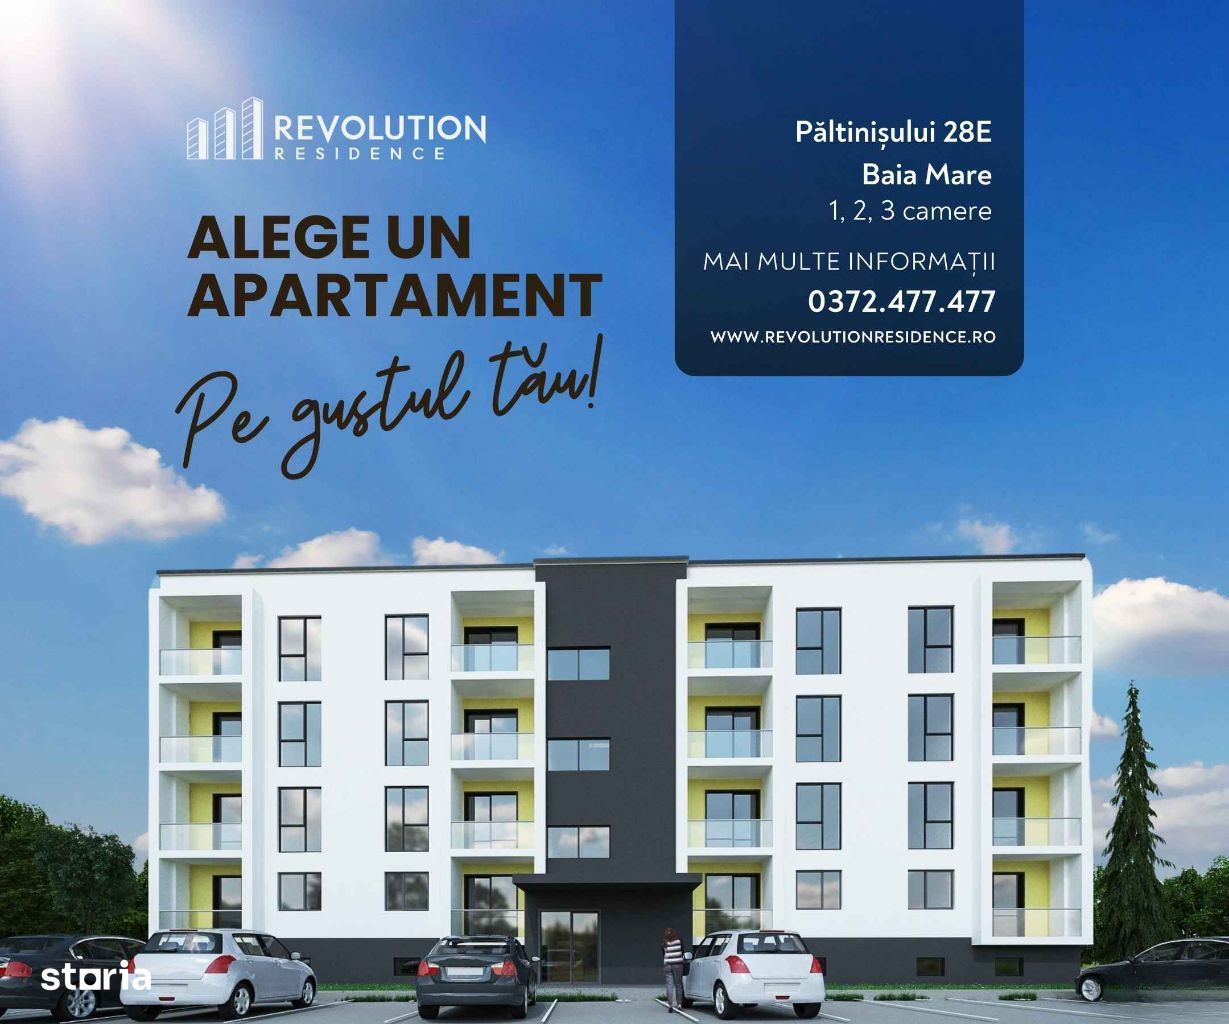 COMISION 0% - Apartamente 1, 2 si 3 camere-Paltinisului 28E, Baia Mare